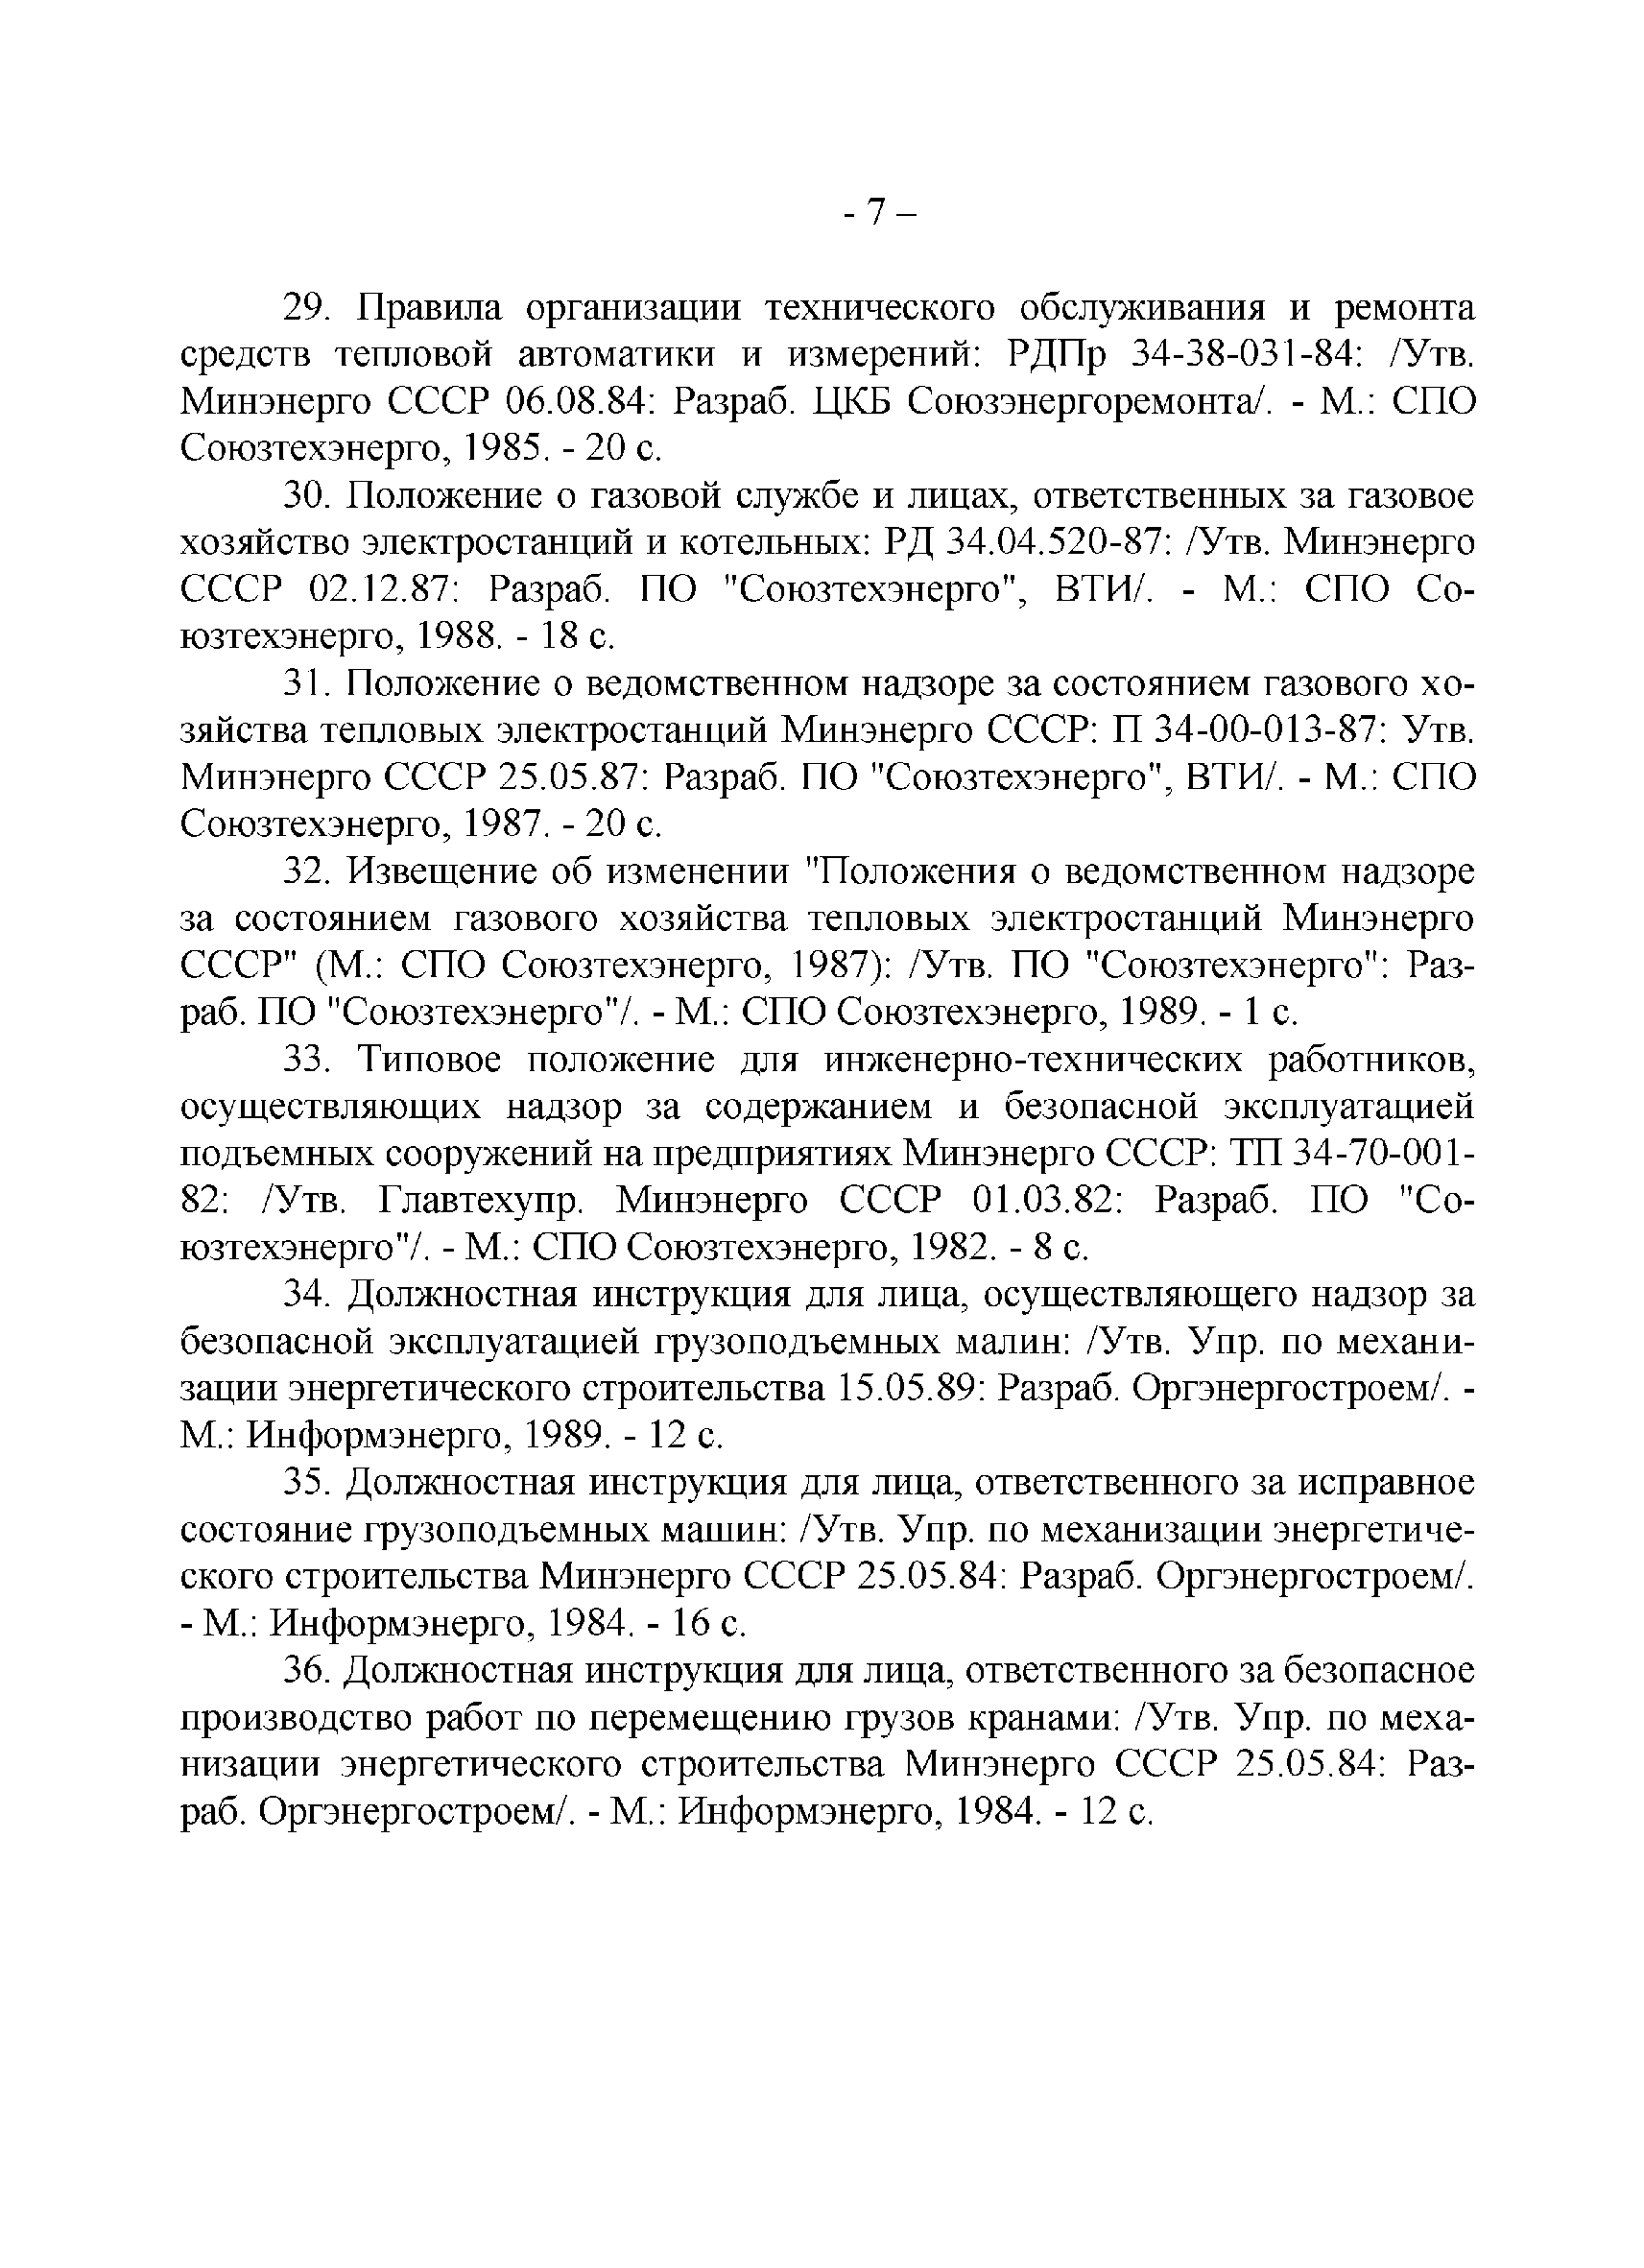 Скачать РД 34.01.201-90 Указатель Руководящих Документов Минэнерго.